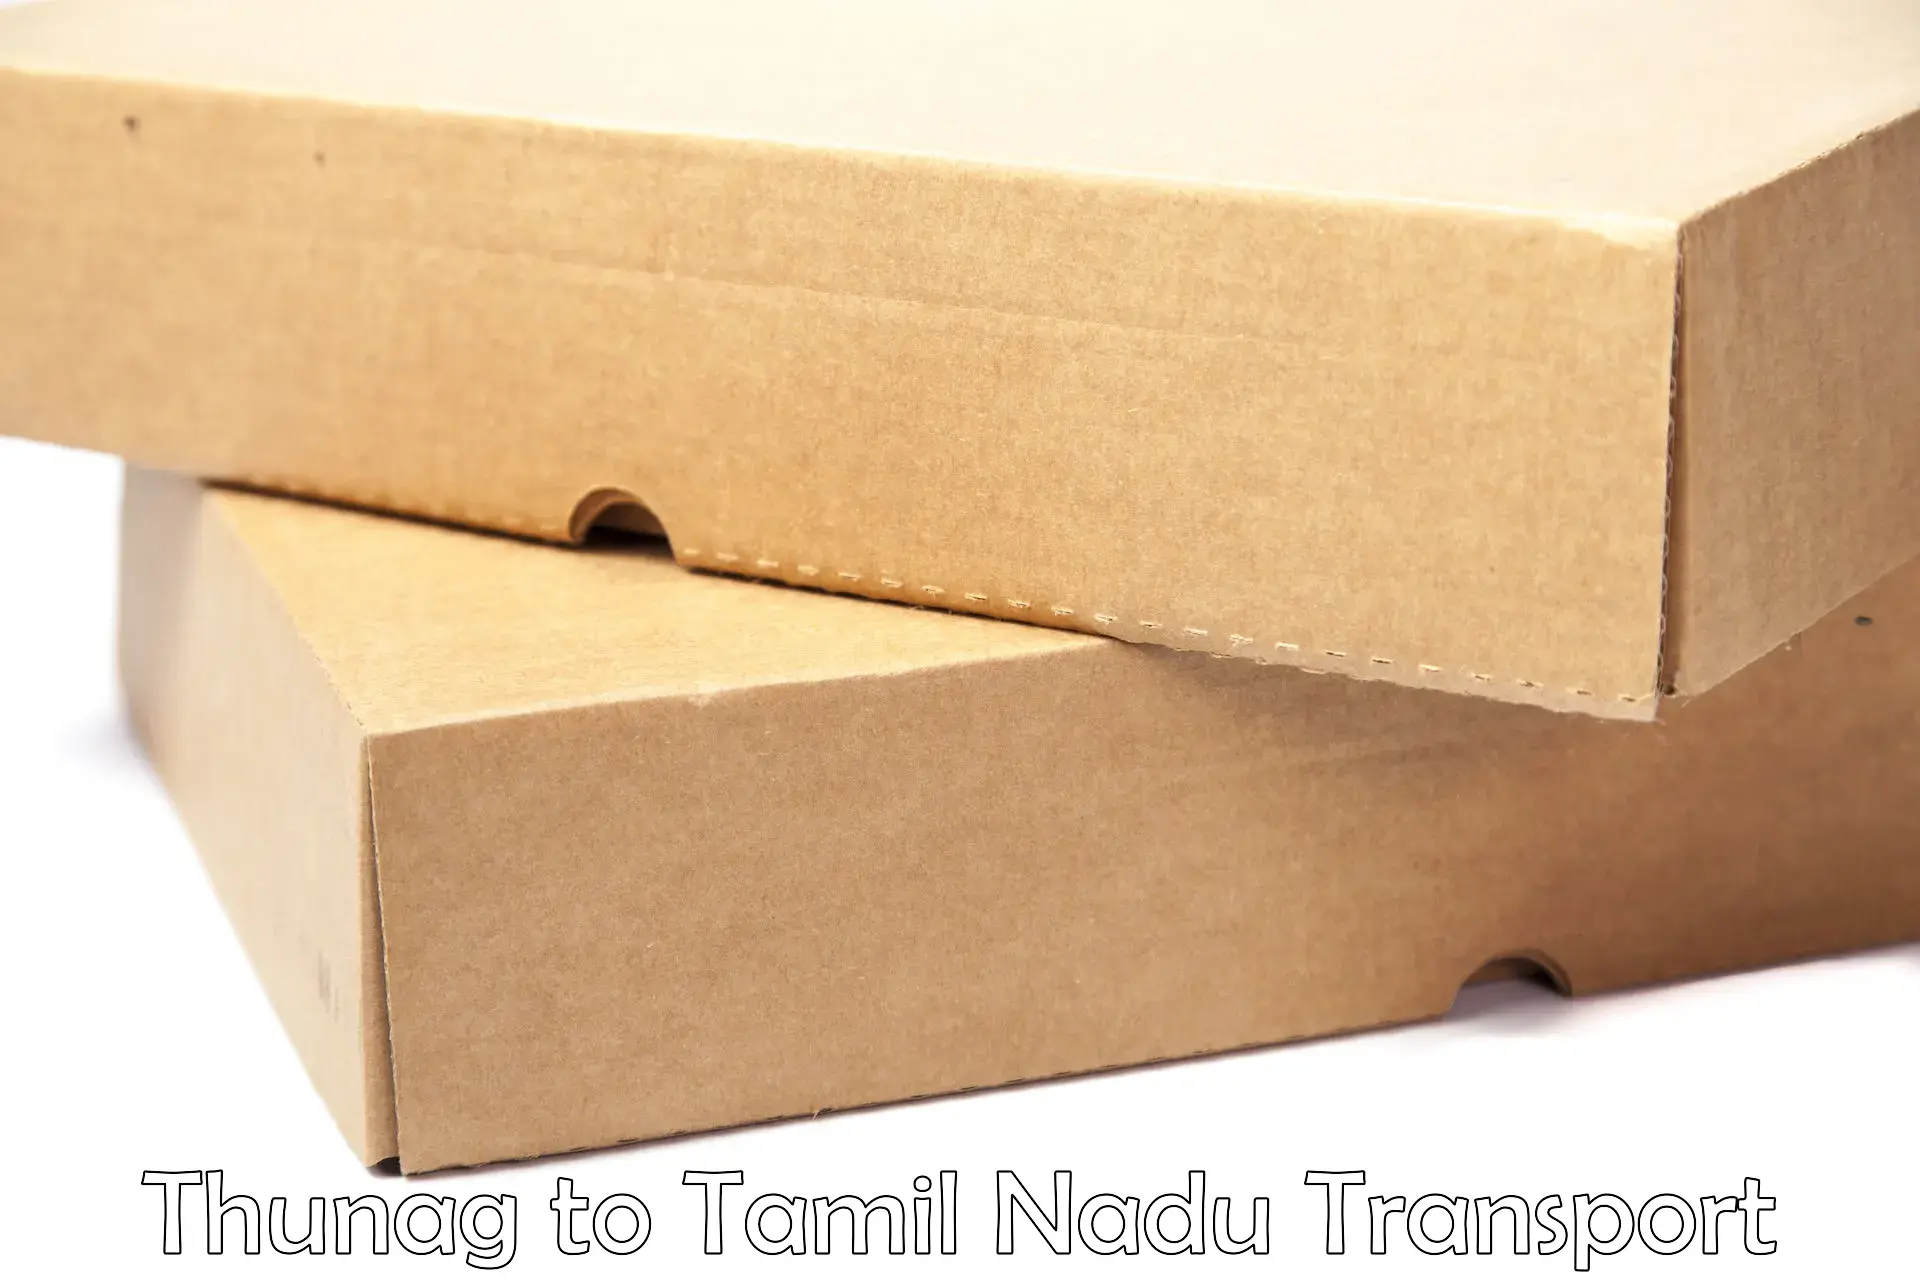 Transport in sharing Thunag to Thiruvadanai